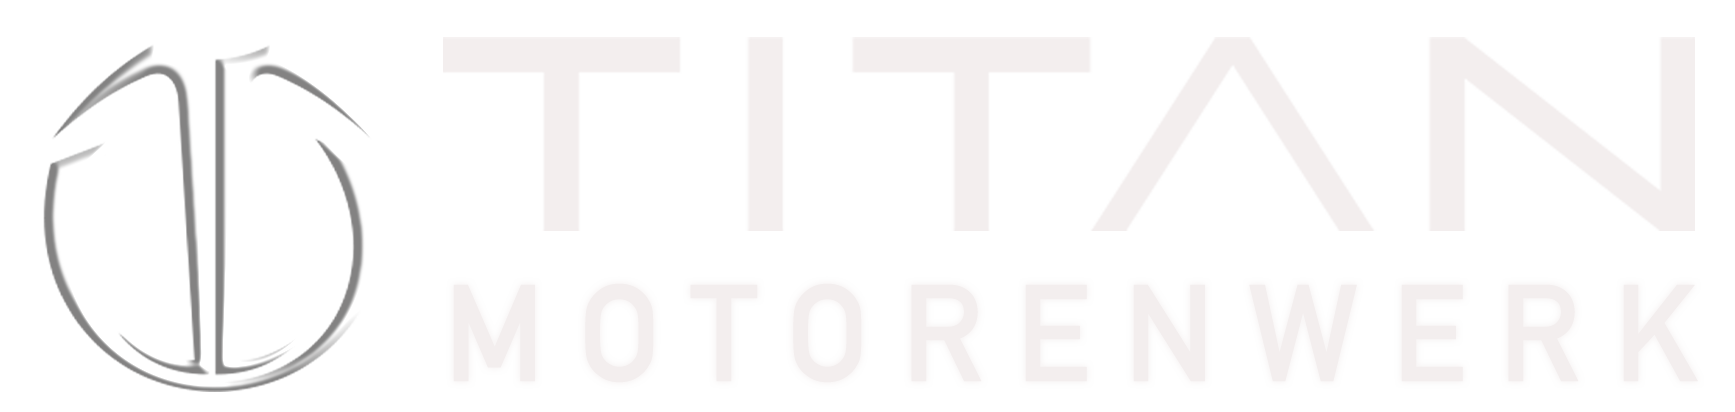 Titan Motorenwerk Logo